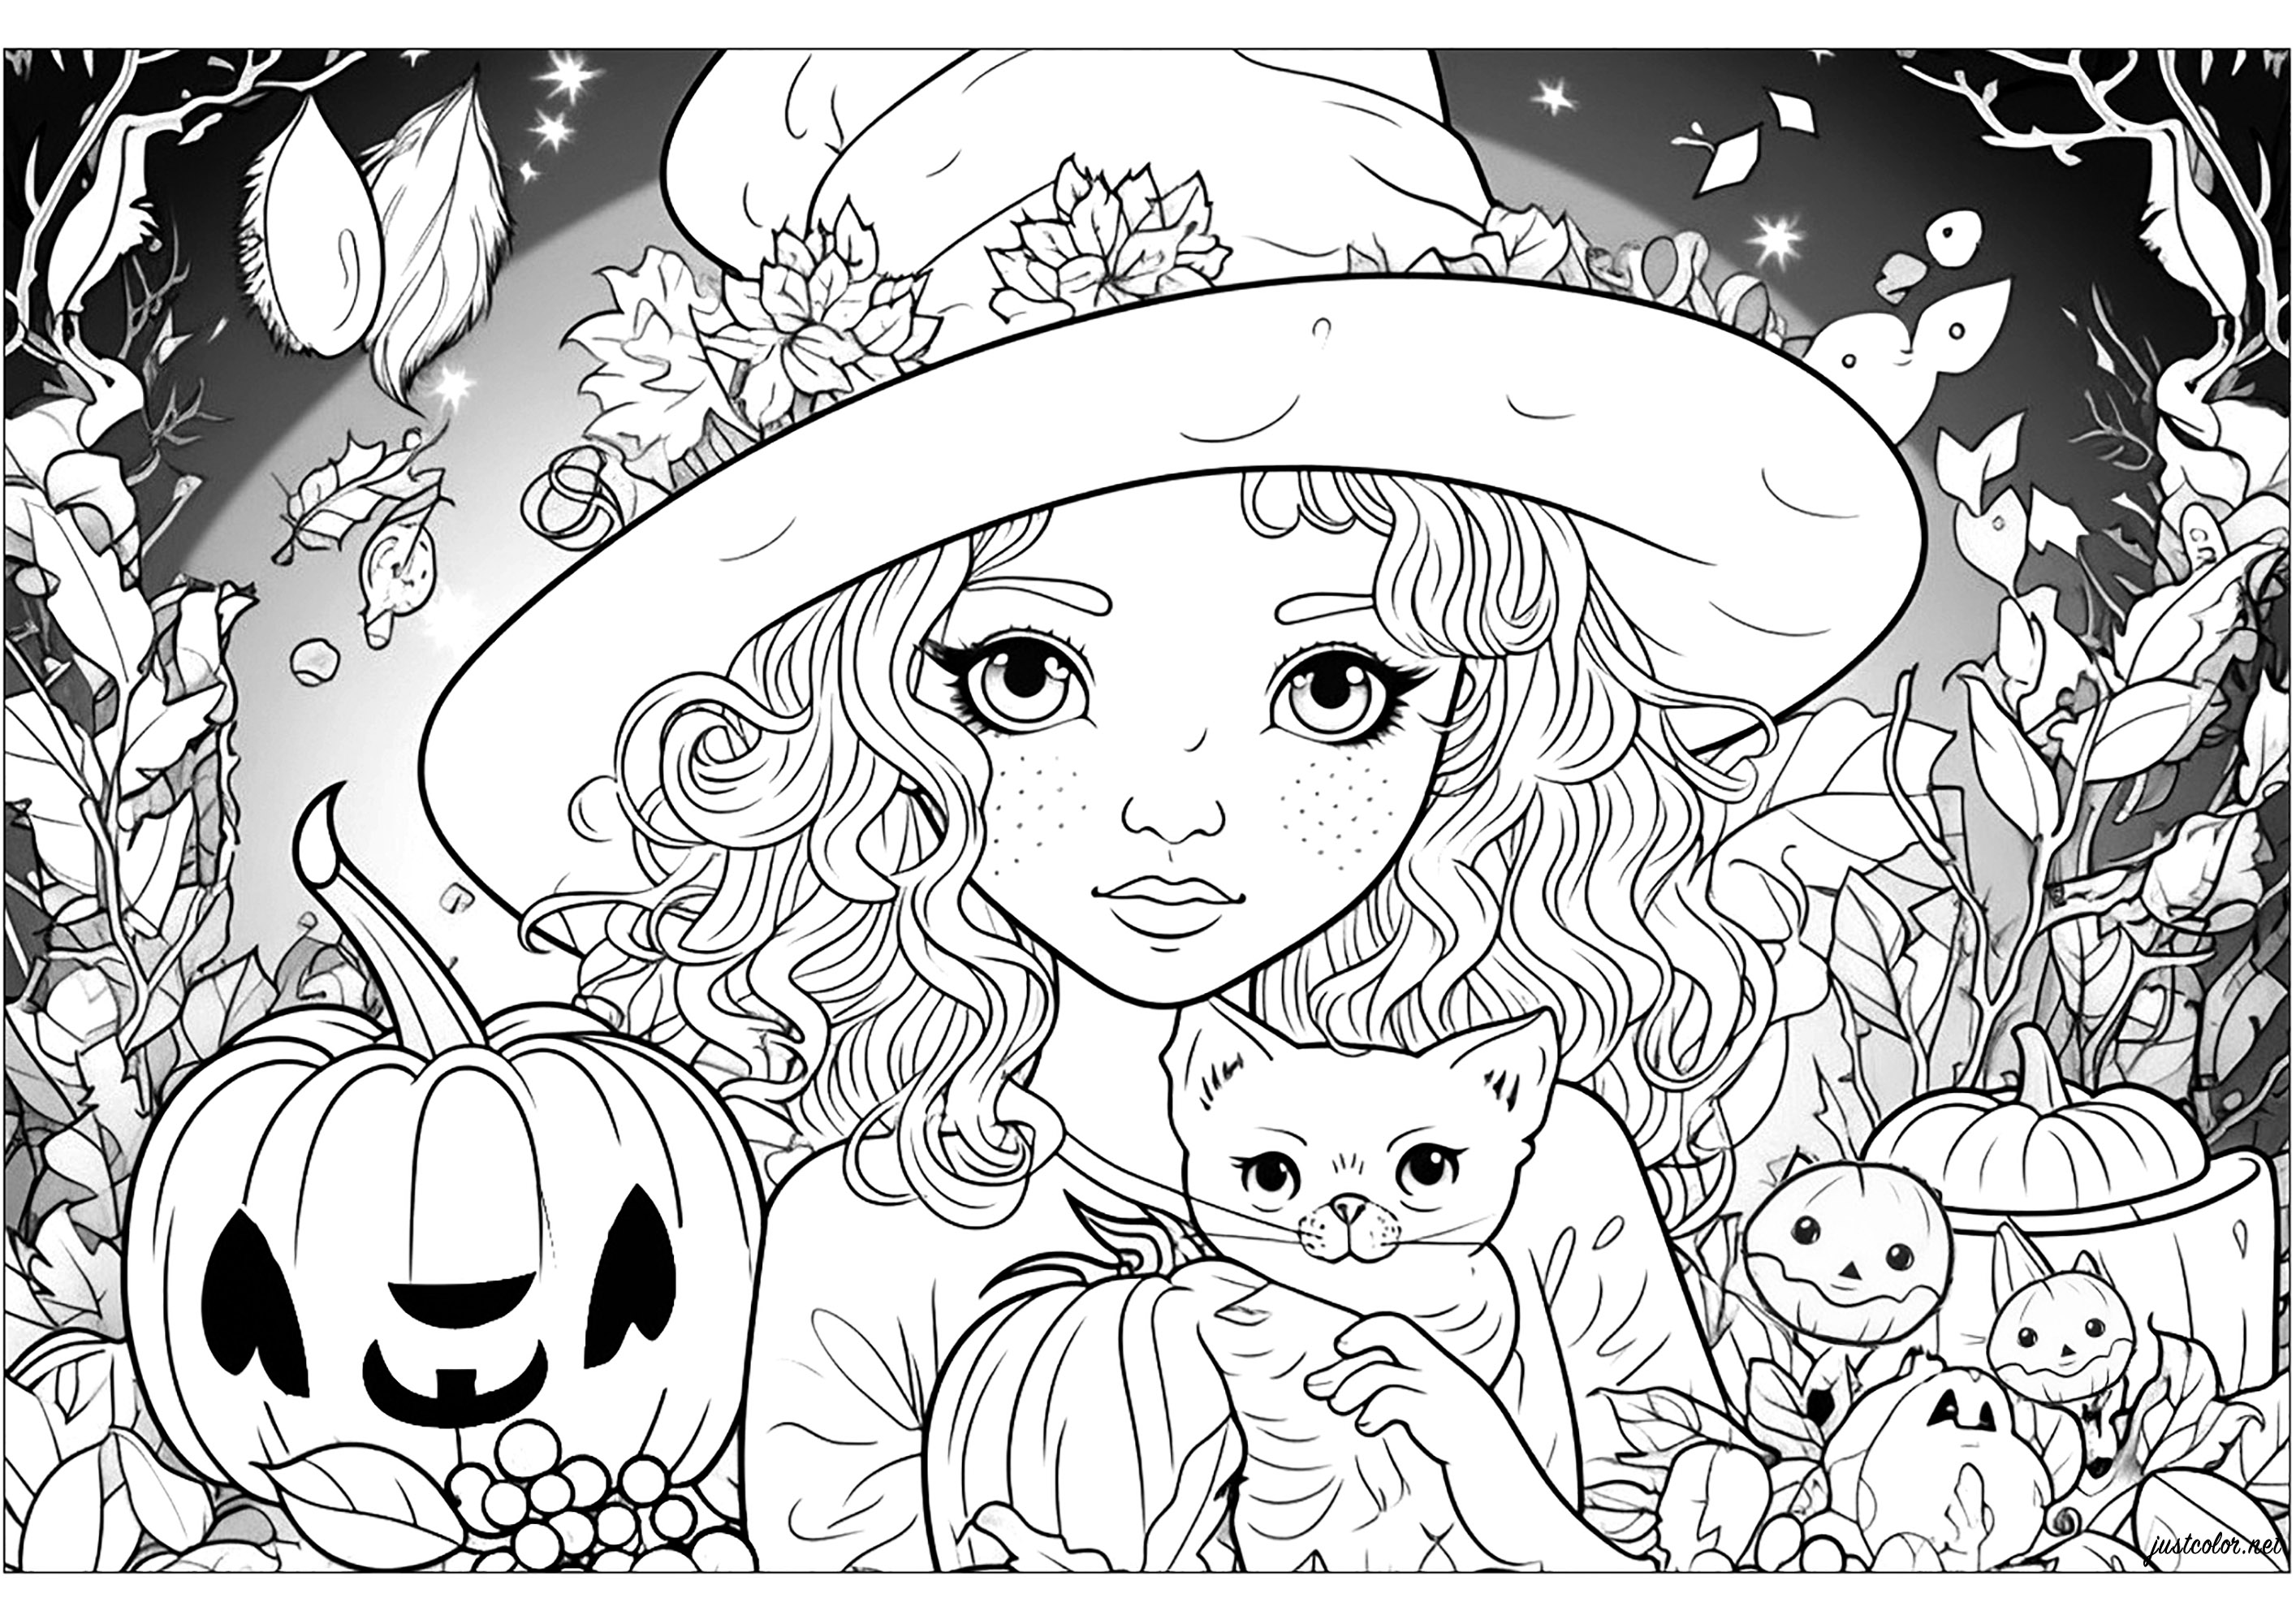 A jovem bruxa e o seu gato. Pinta os muitos pormenores e as estranhas criaturas que rodeiam esta bonita bruxa.